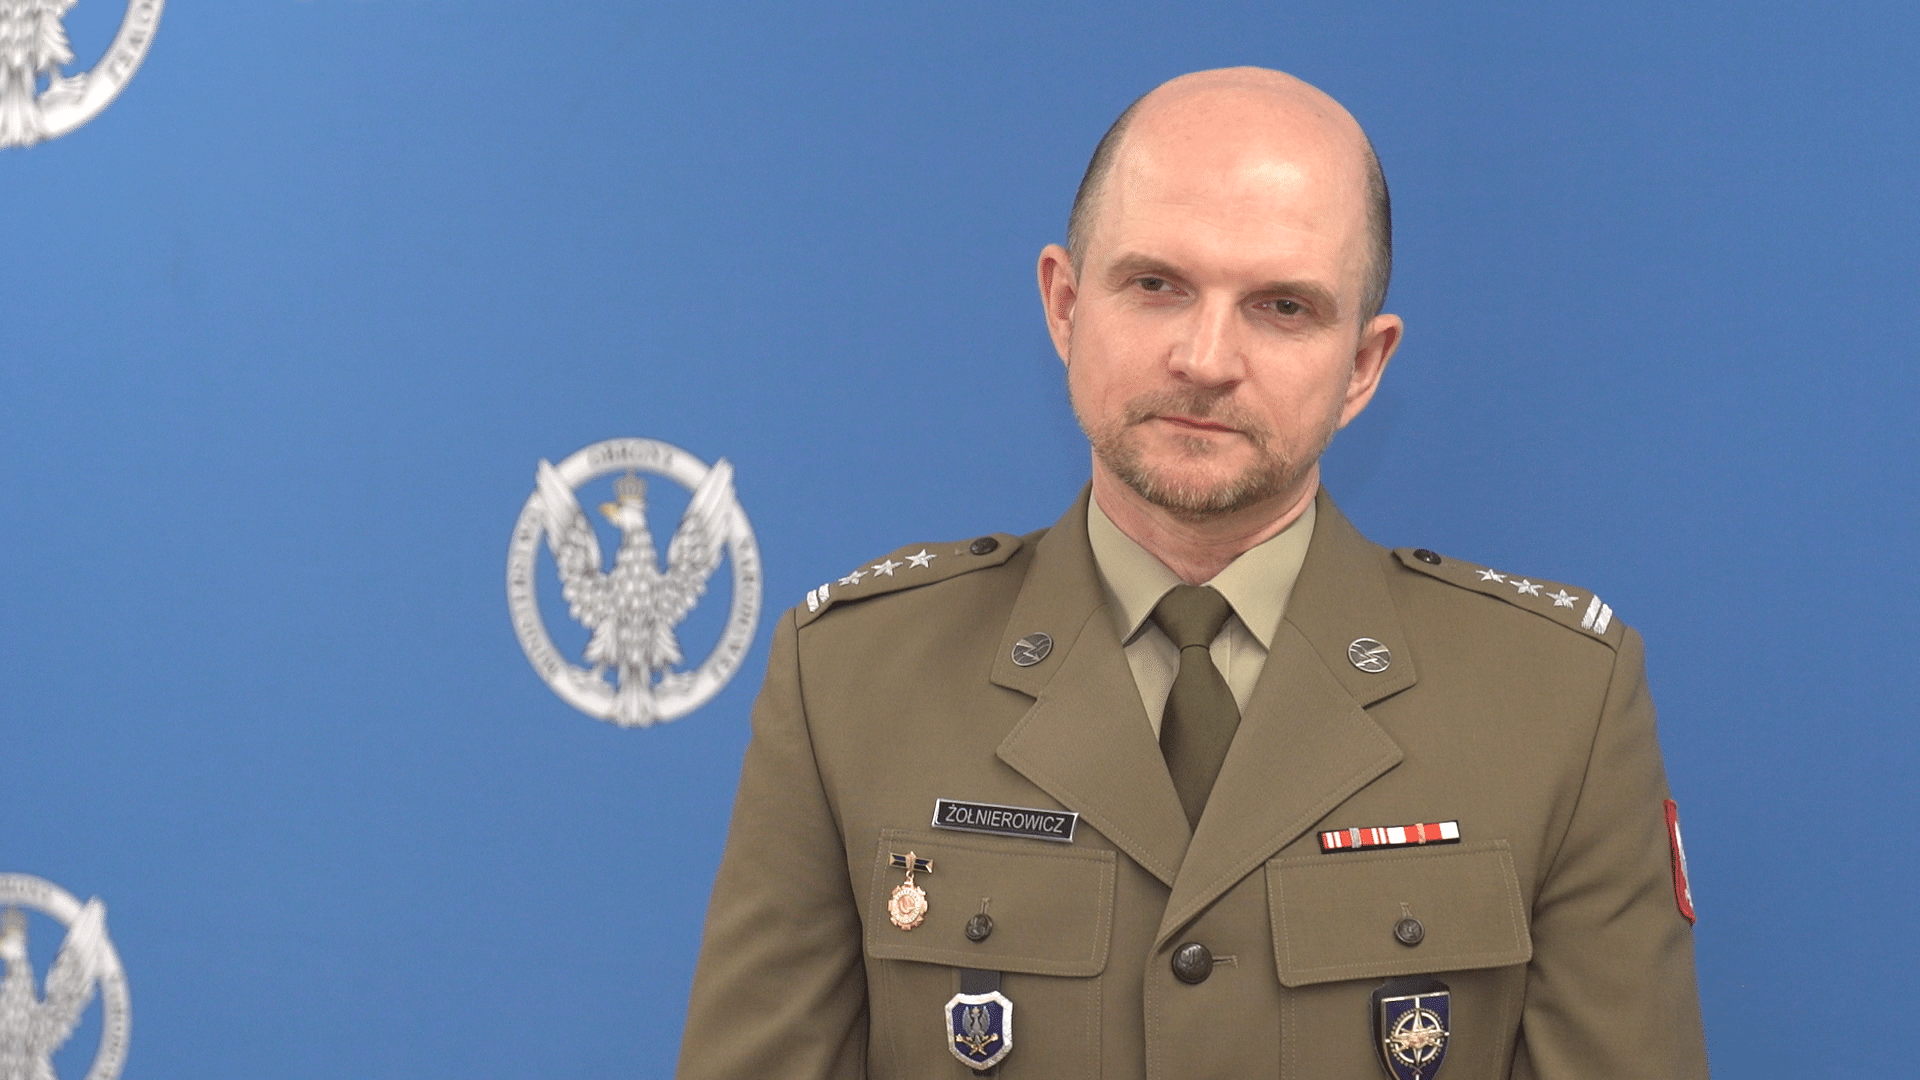 Col. Michał Żołnierowicz